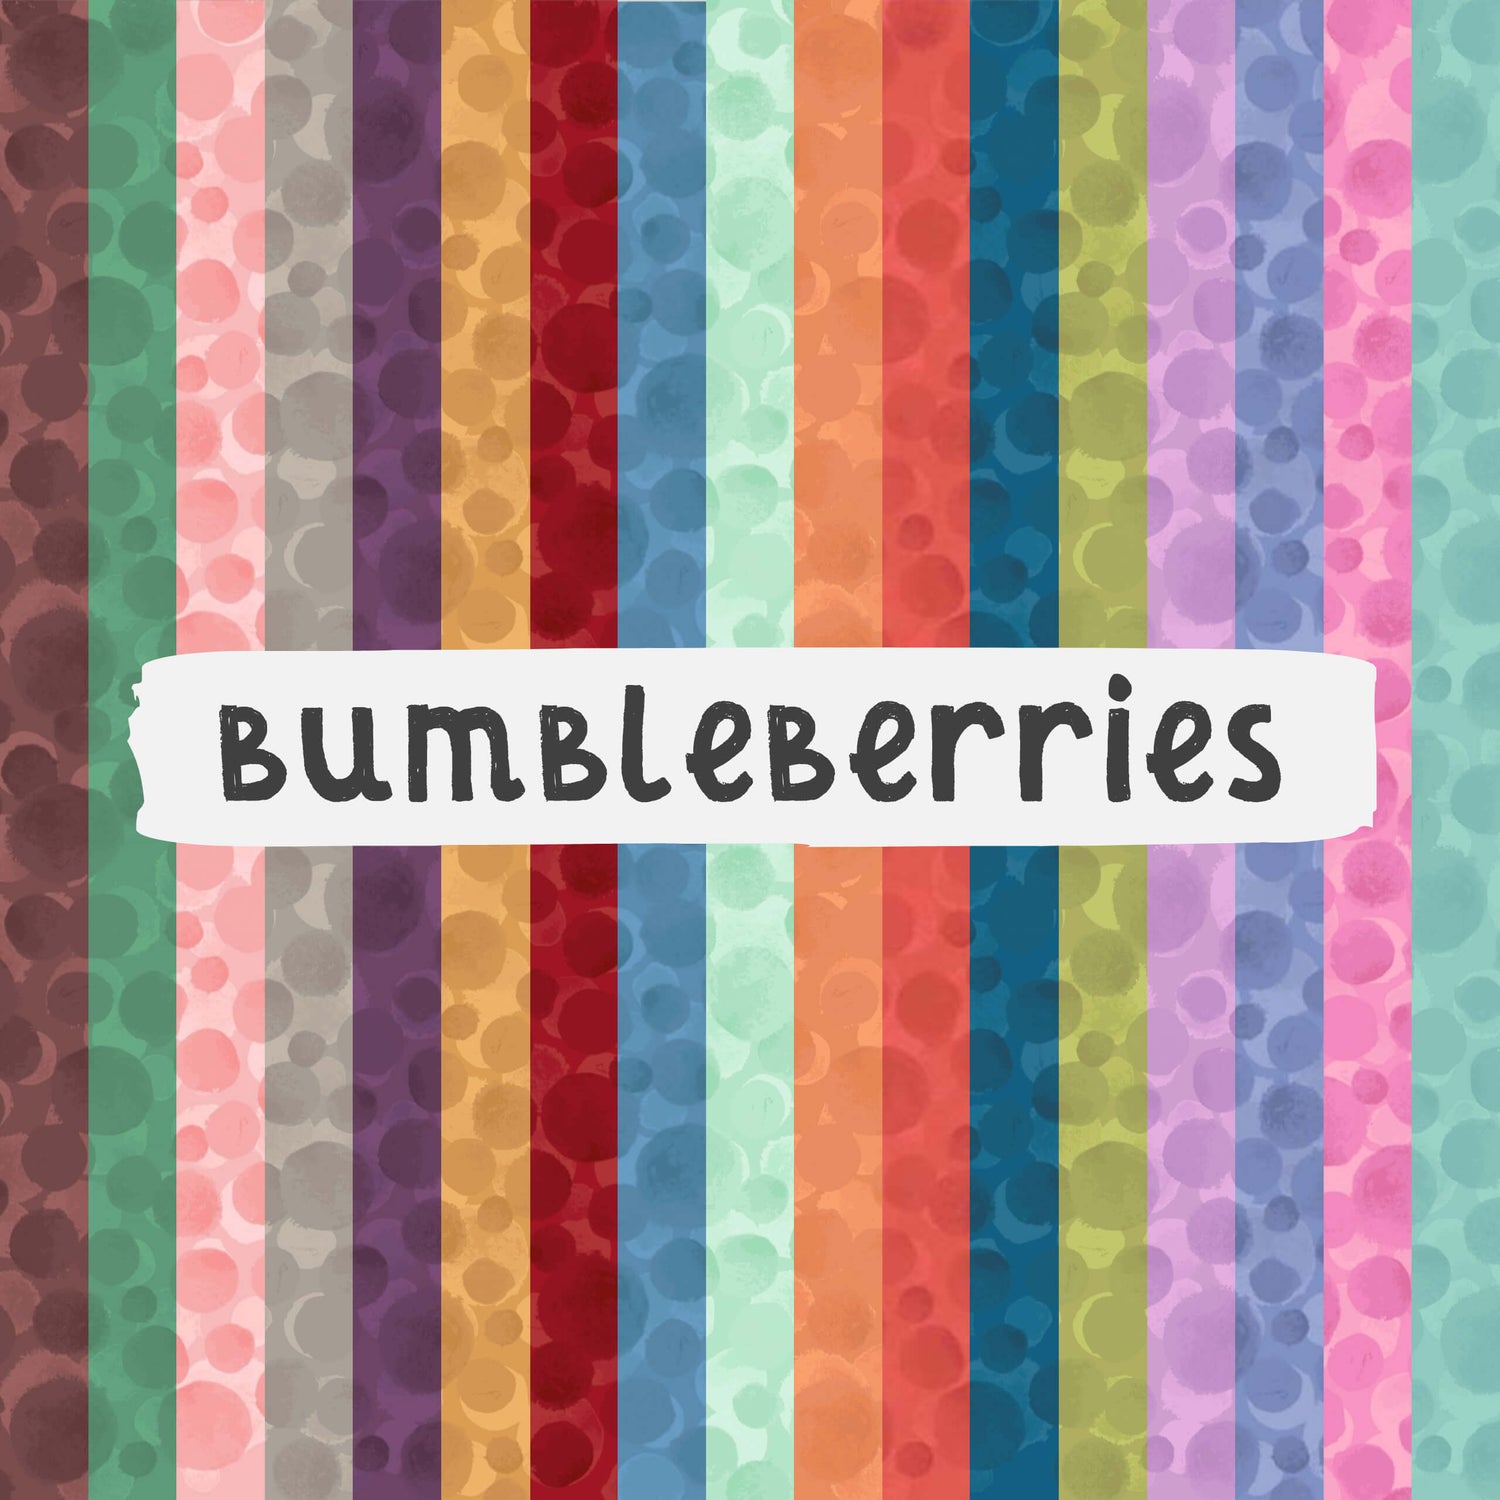 Bumbleberries